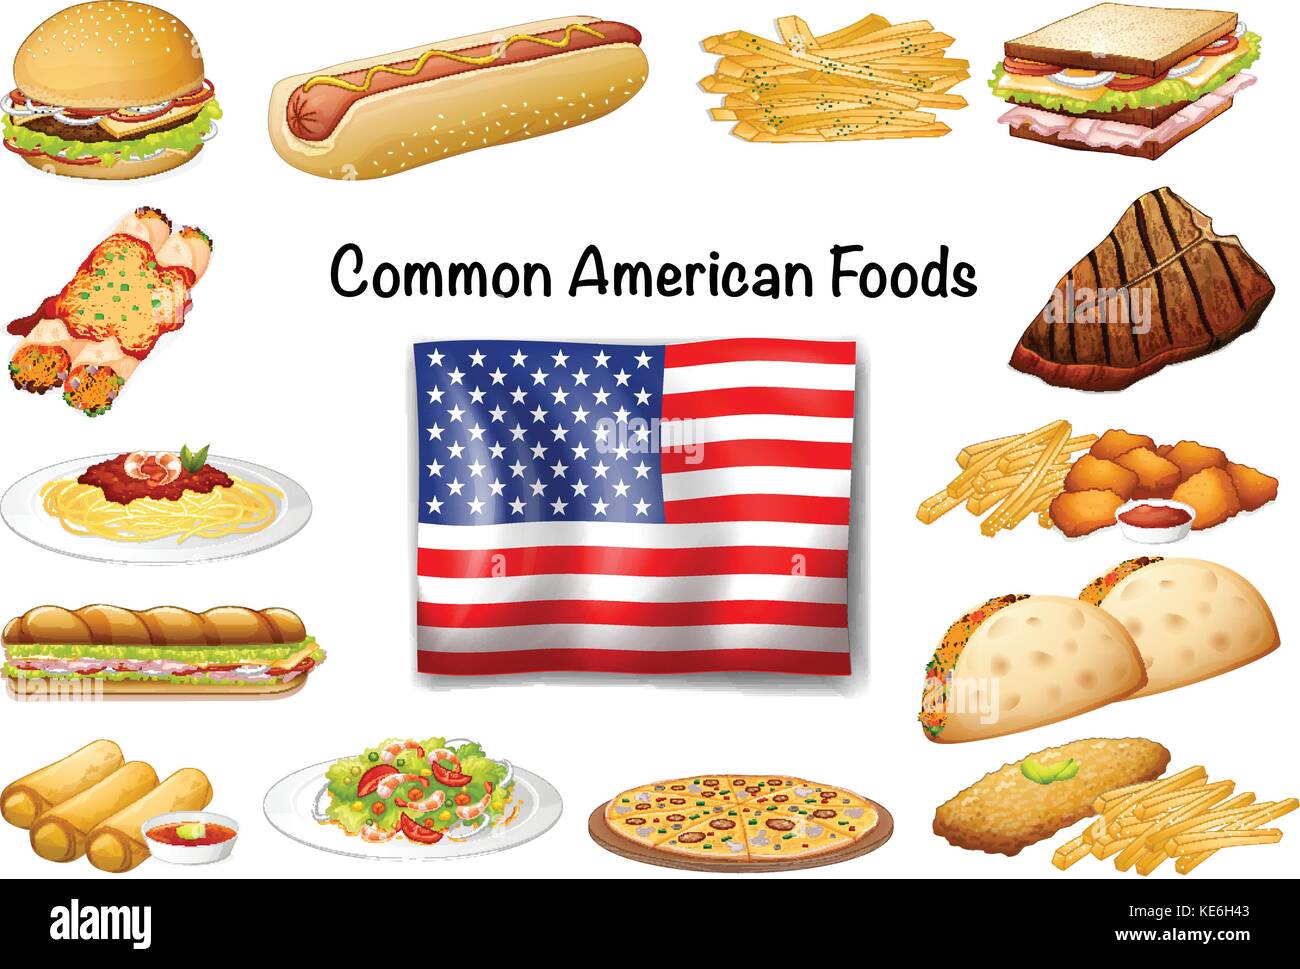 La nourriture américaine commune différente illustration set Image